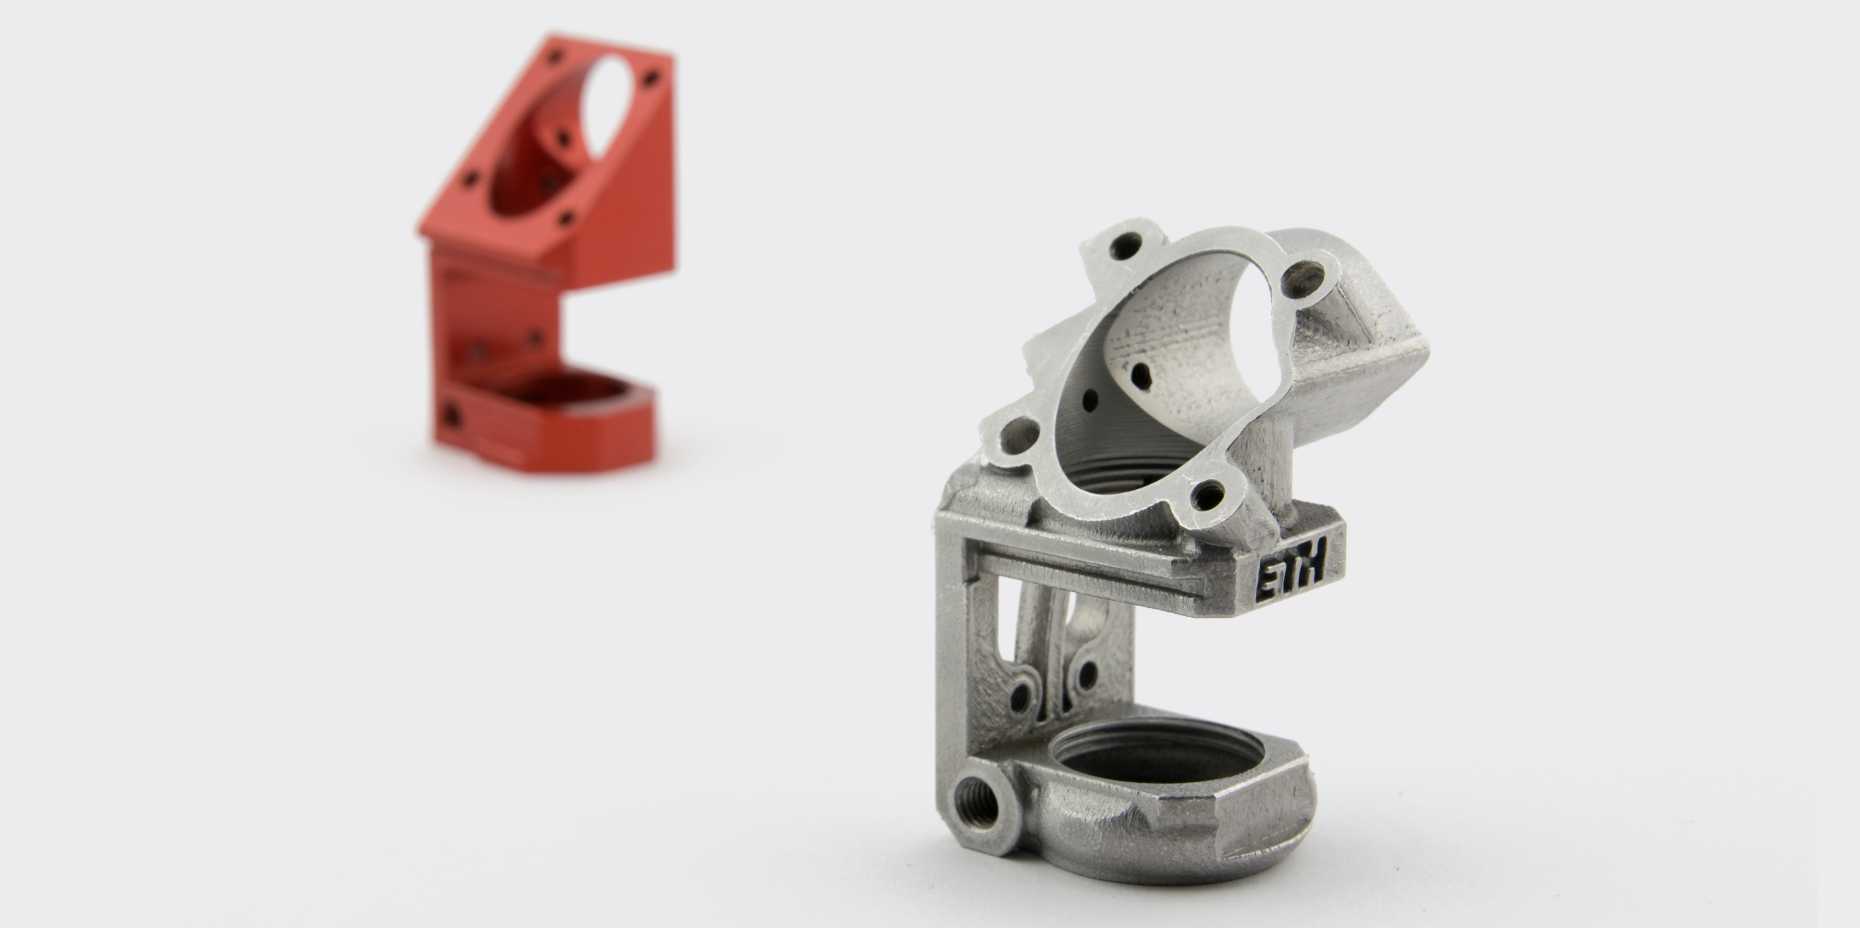 Vergrösserte Ansicht: Spezifisch für 3D-Druck konstruiertes Bauteil. (Bild: PDZ Product Development Group Zurich)